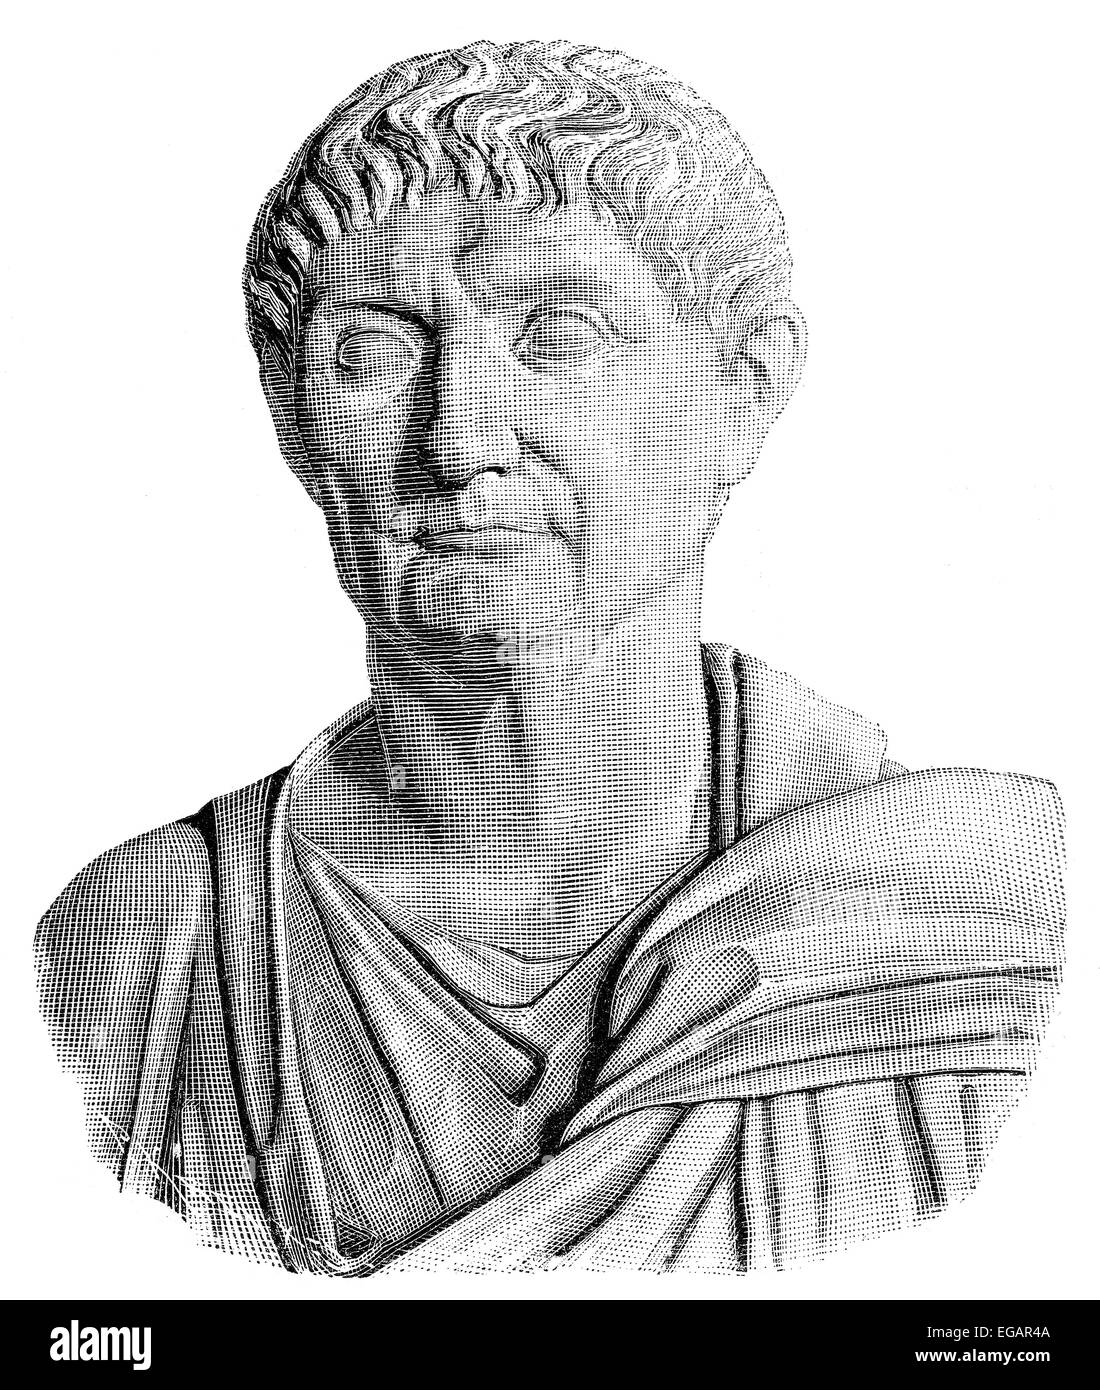 Diocletian or Gaius Aurelius Valerius Diocletianus Augustus, 245 - 311, Roman emperor from 284 to 305, Stock Photo